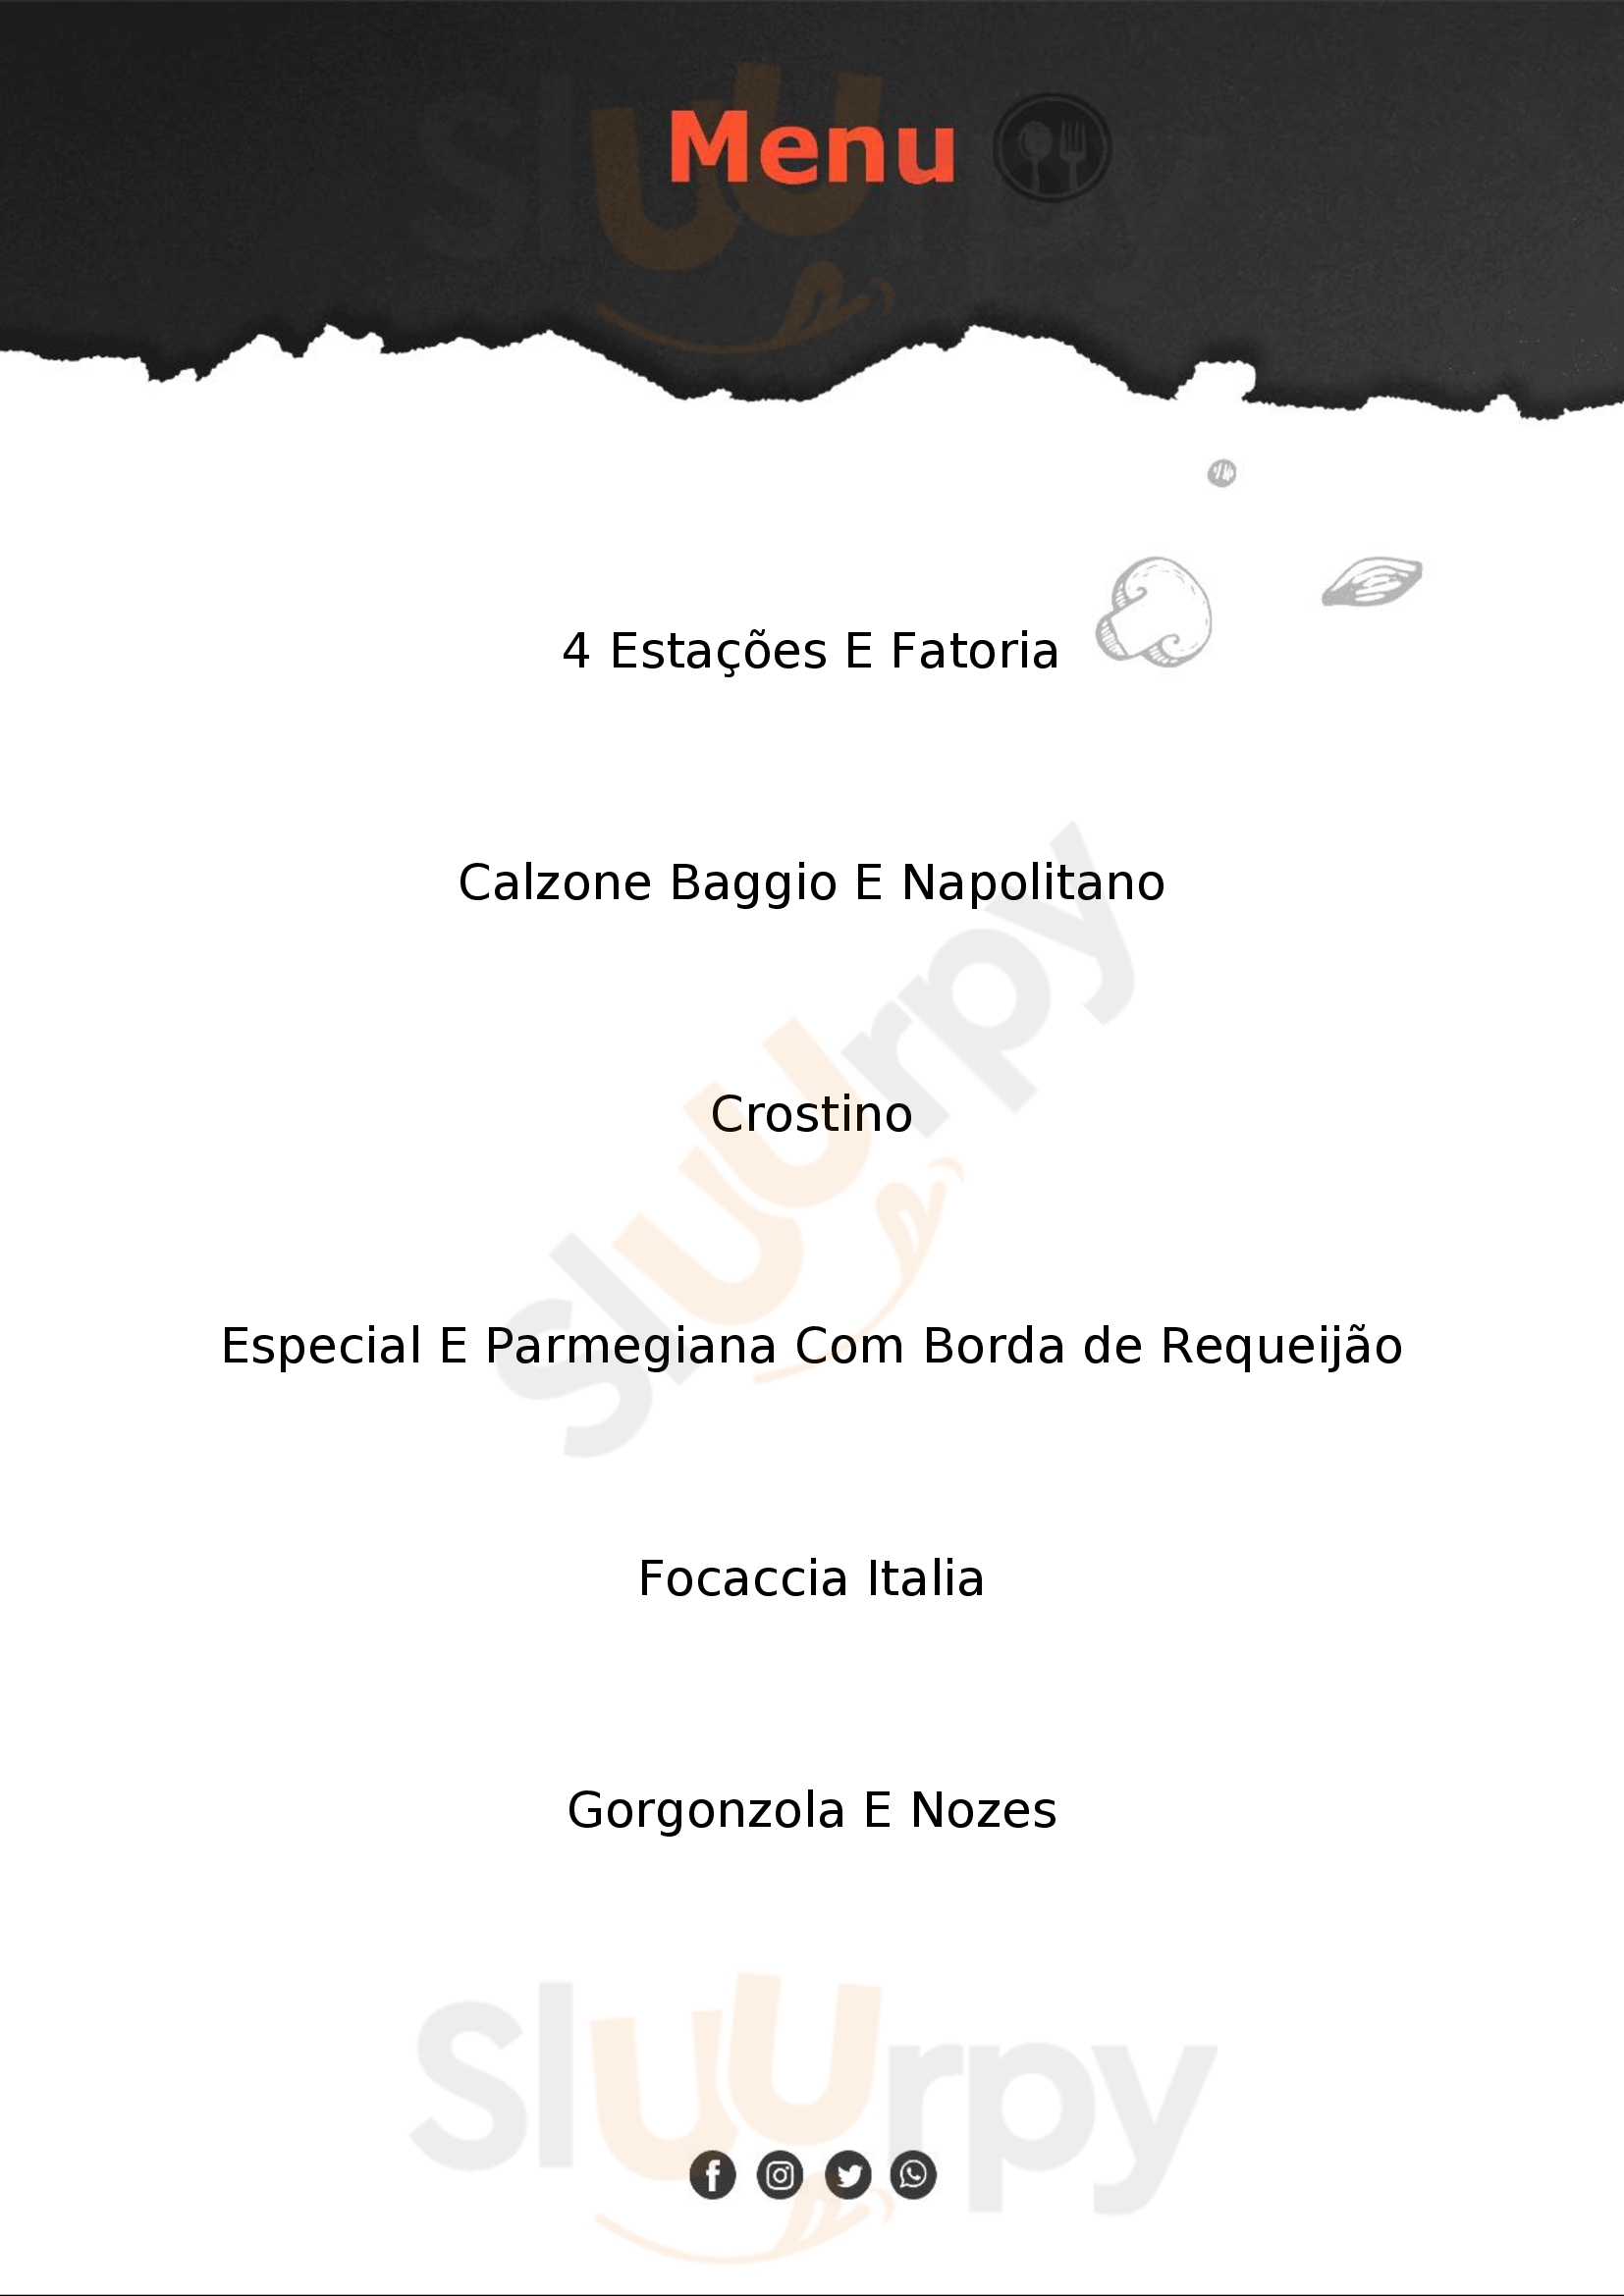 Baggio Pizzeria & Focacceria Joinville Menu - 1